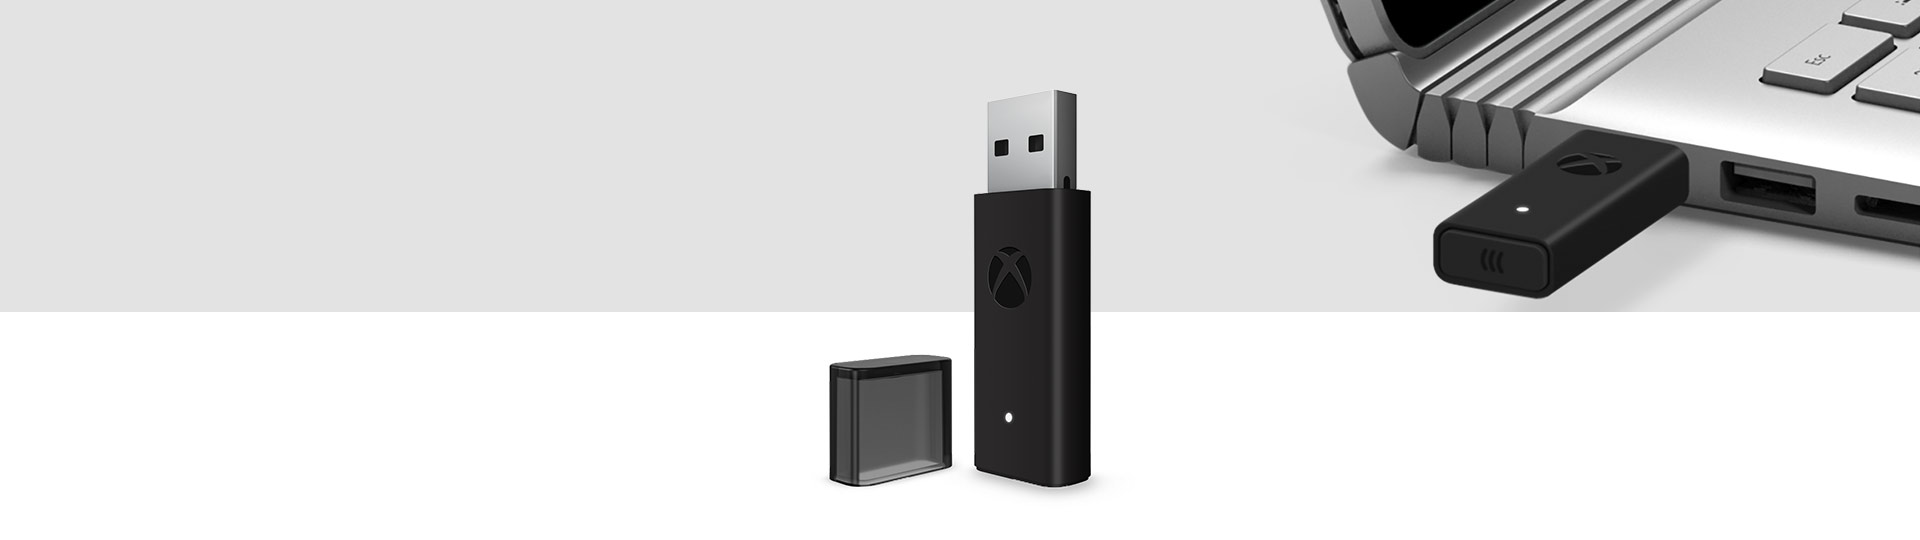 Xbox Wireless Controller Adapter för Windows 10 med Xbox Wireless Adapter ansluten till en bärbar dator i bakgrunden via en USB-port